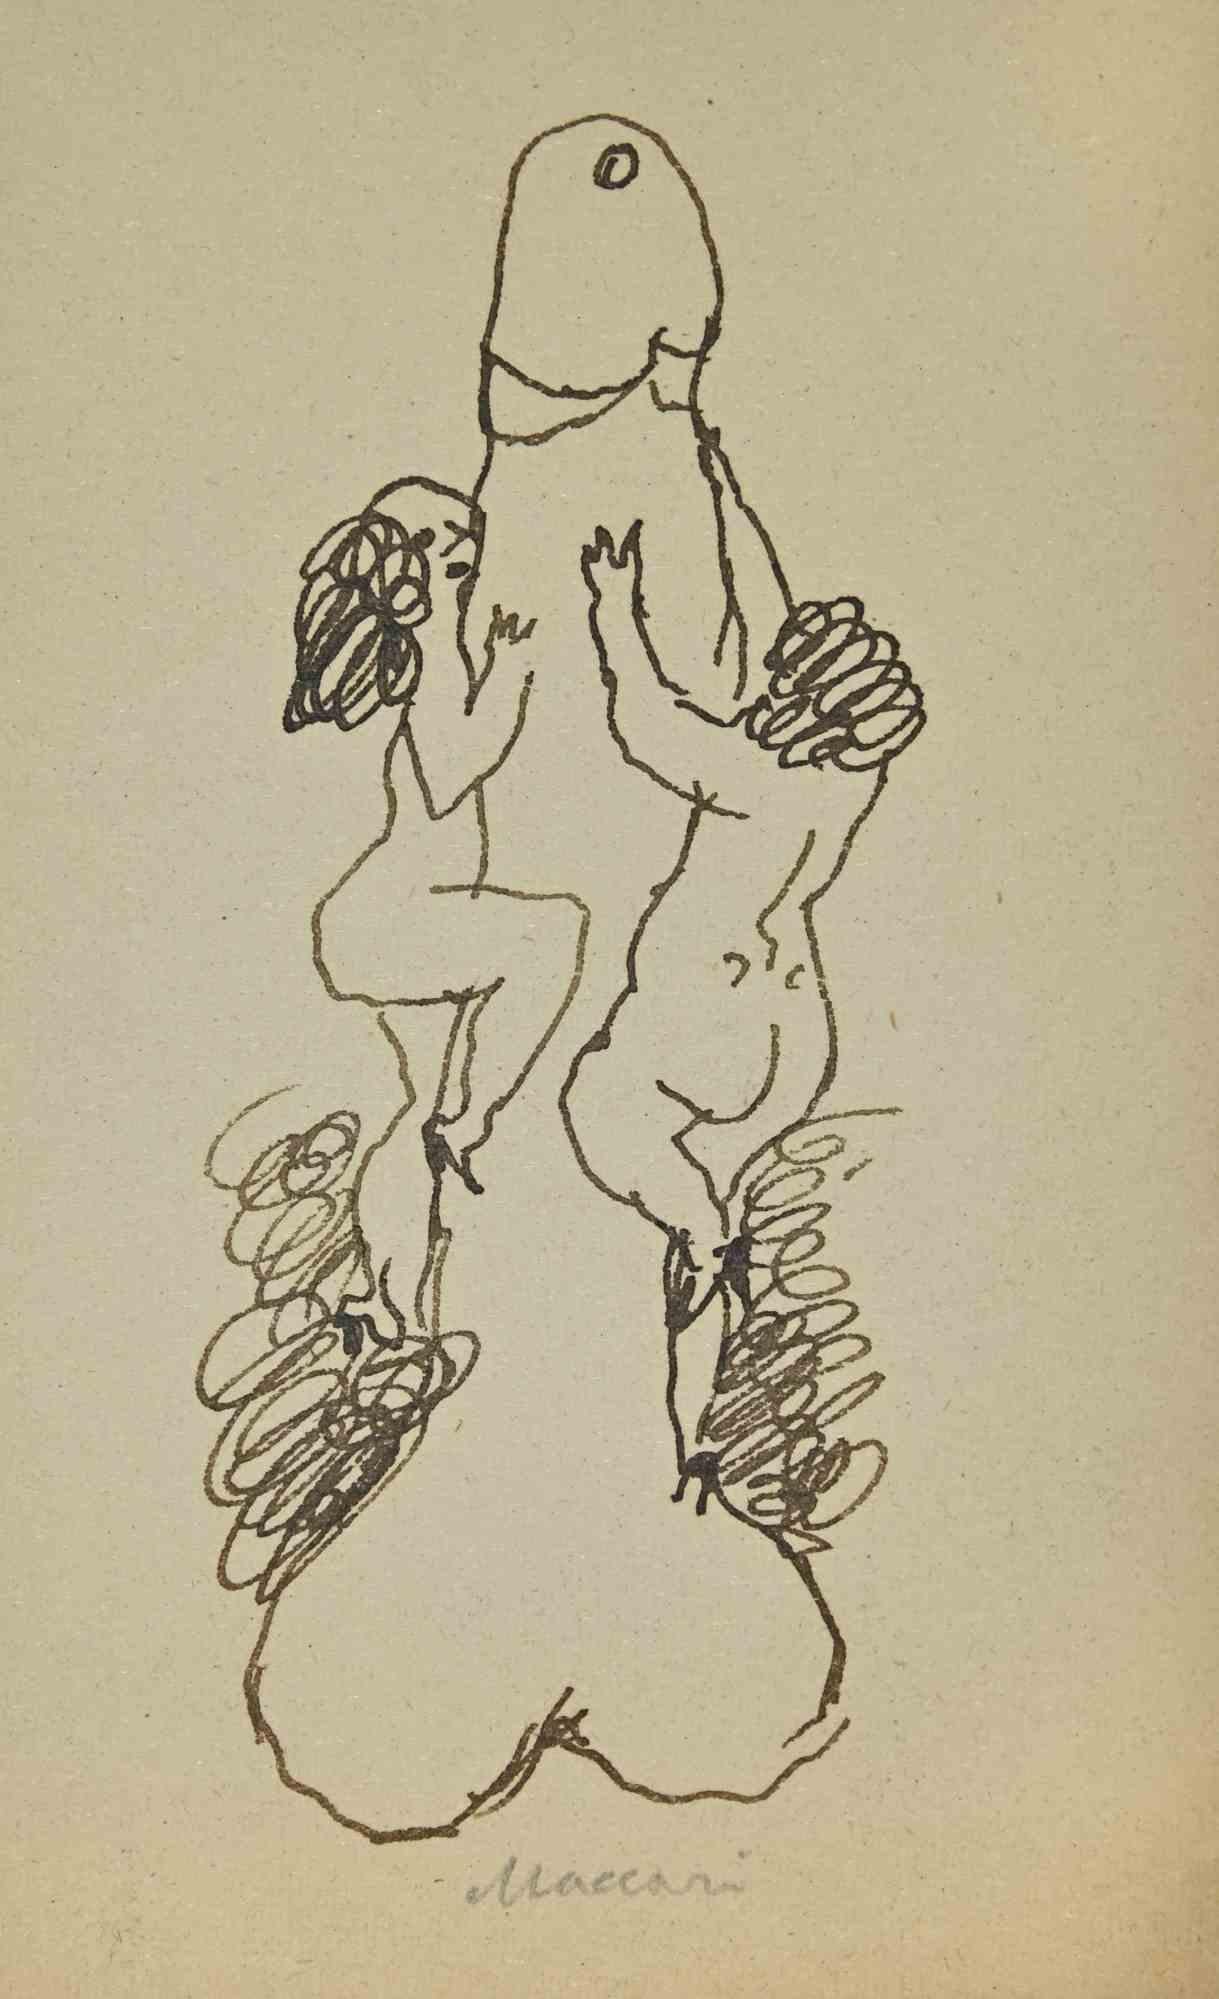 Die Bergsteiger ist ein Kunstwerk von Mino Maccari (1924-1989) aus dem Jahr 1940.

Zeichenstift auf vergilbtem Papier. Handsigniert am unteren Rand.

Gute Bedingungen.

Mino Maccari (Siena, 1924-Rom, 16. Juni 1989) war ein italienischer